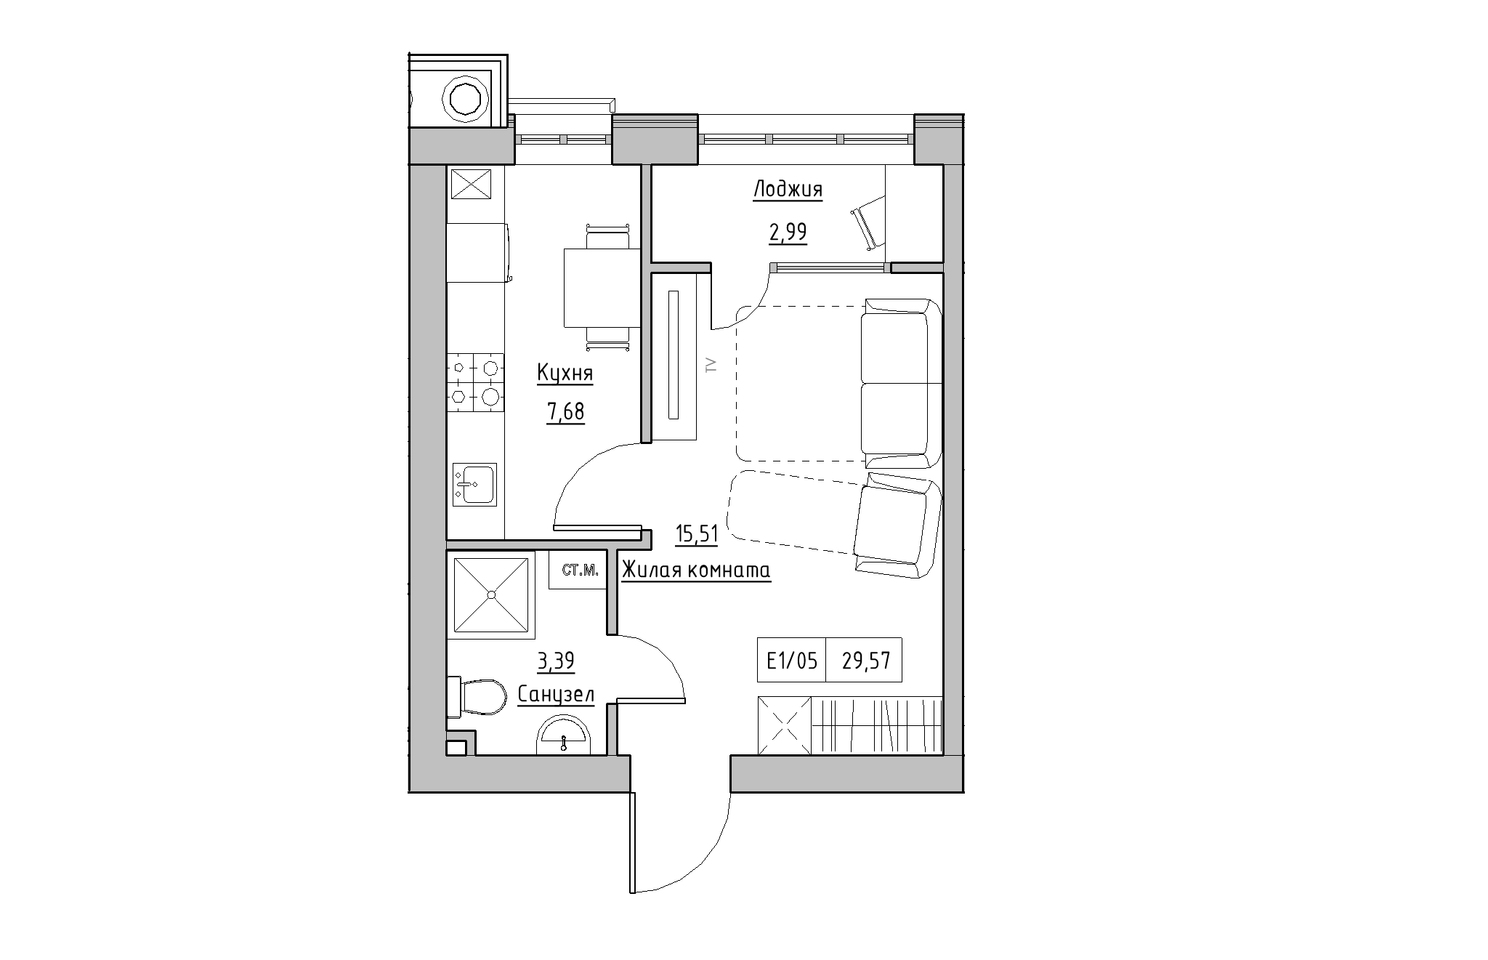 Планування 1-к квартира площею 29.57м2, KS-010-02/0006.